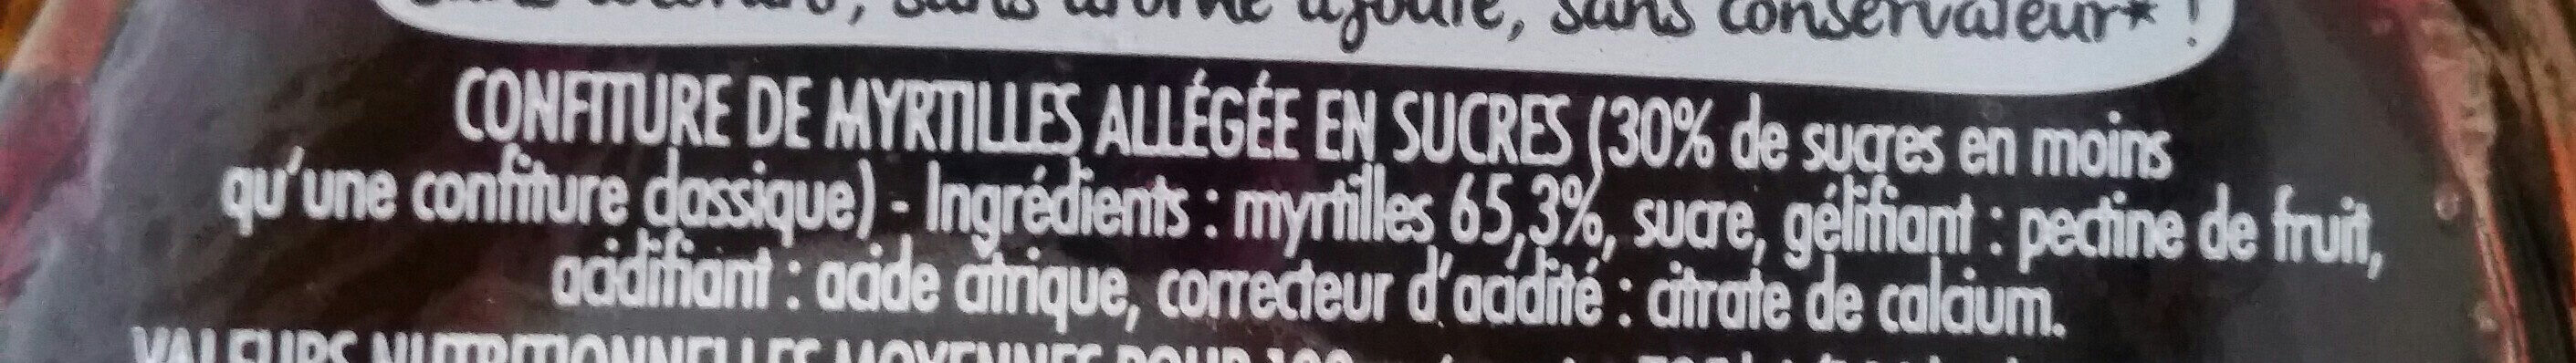 Confiture Allégée Myrtille - Ingredients - fr